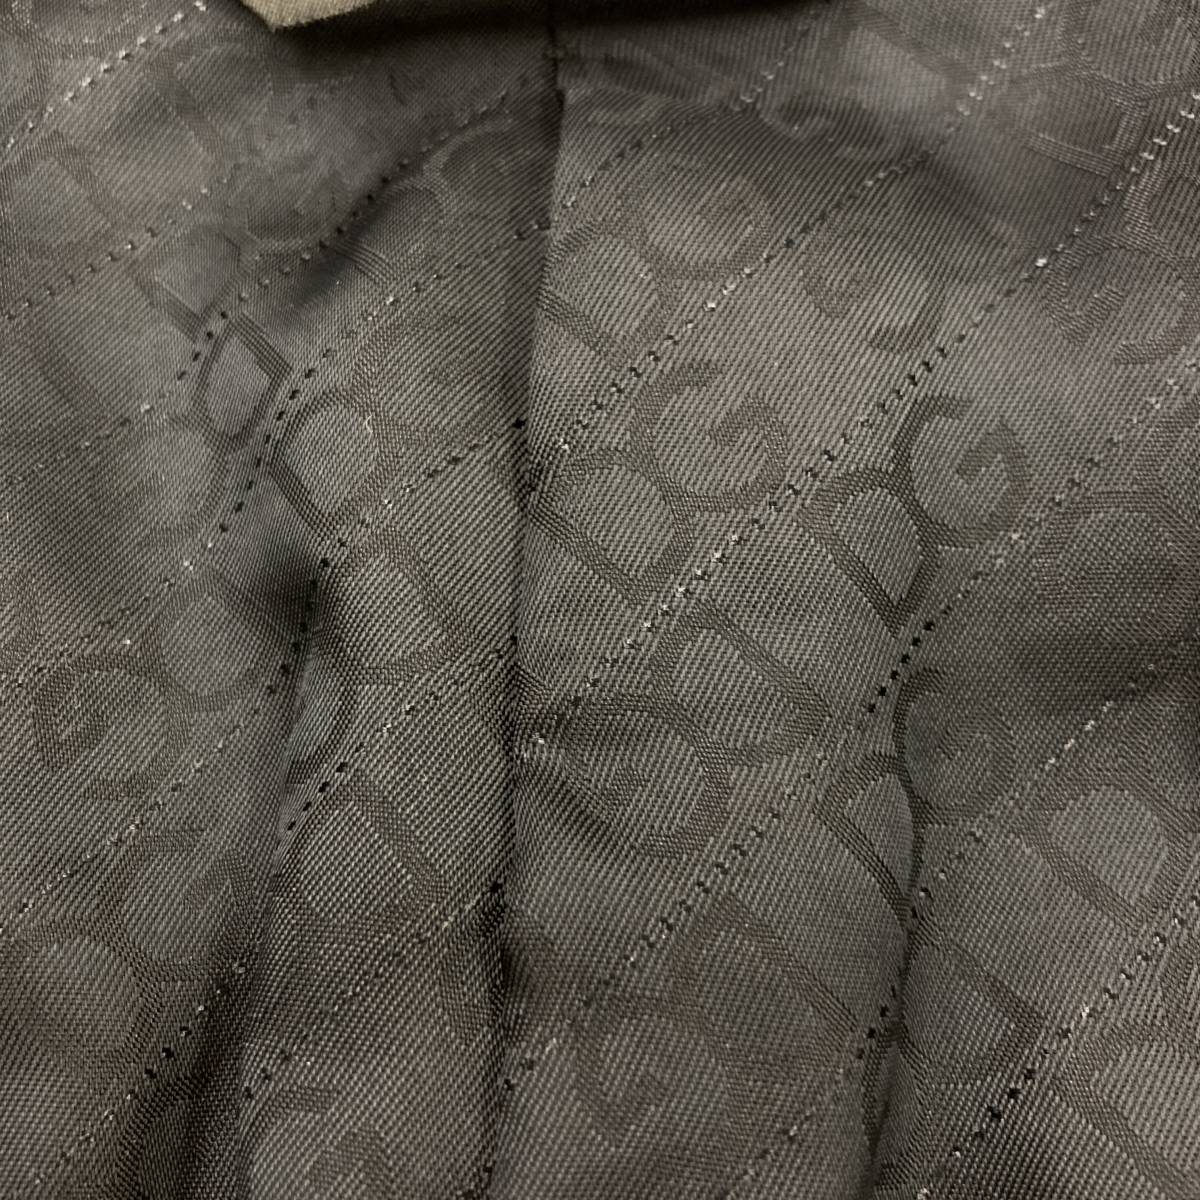 DOLCE&GABBANA Италия производства tailored jacket подкладка монограмма необшитый на спине черный чёрный мужской 46 Dolce & Gabbana Dolce&Gabbana 3050167